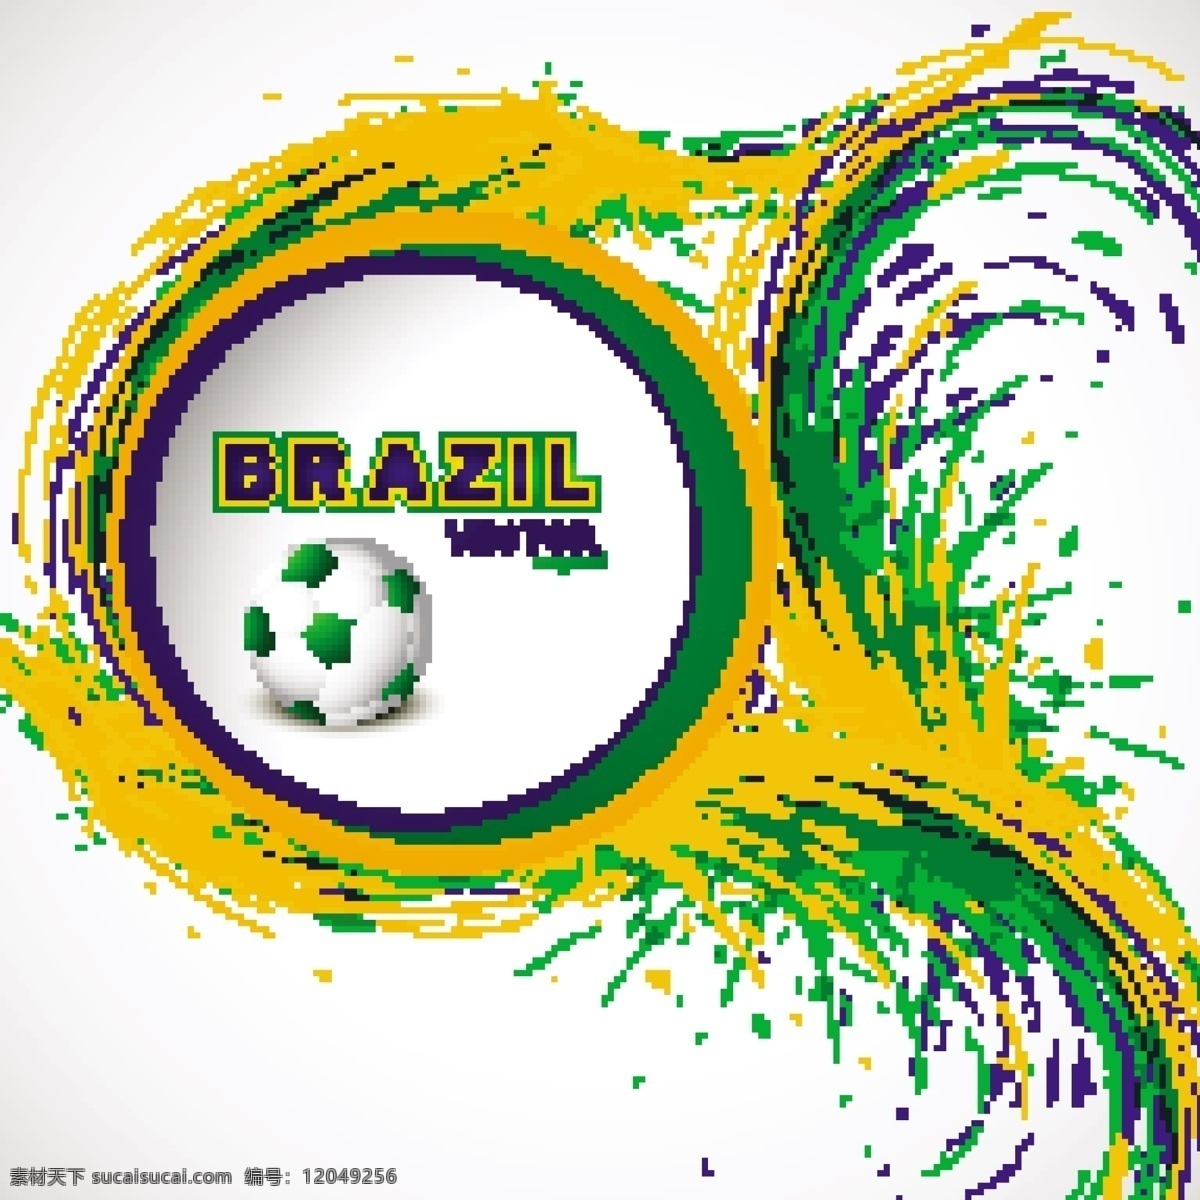 水墨 喷溅 足球 模板下载 巴西 世界杯 水墨喷溅 足球赛事 足球比赛 体育运动 生活百科 矢量素材 白色